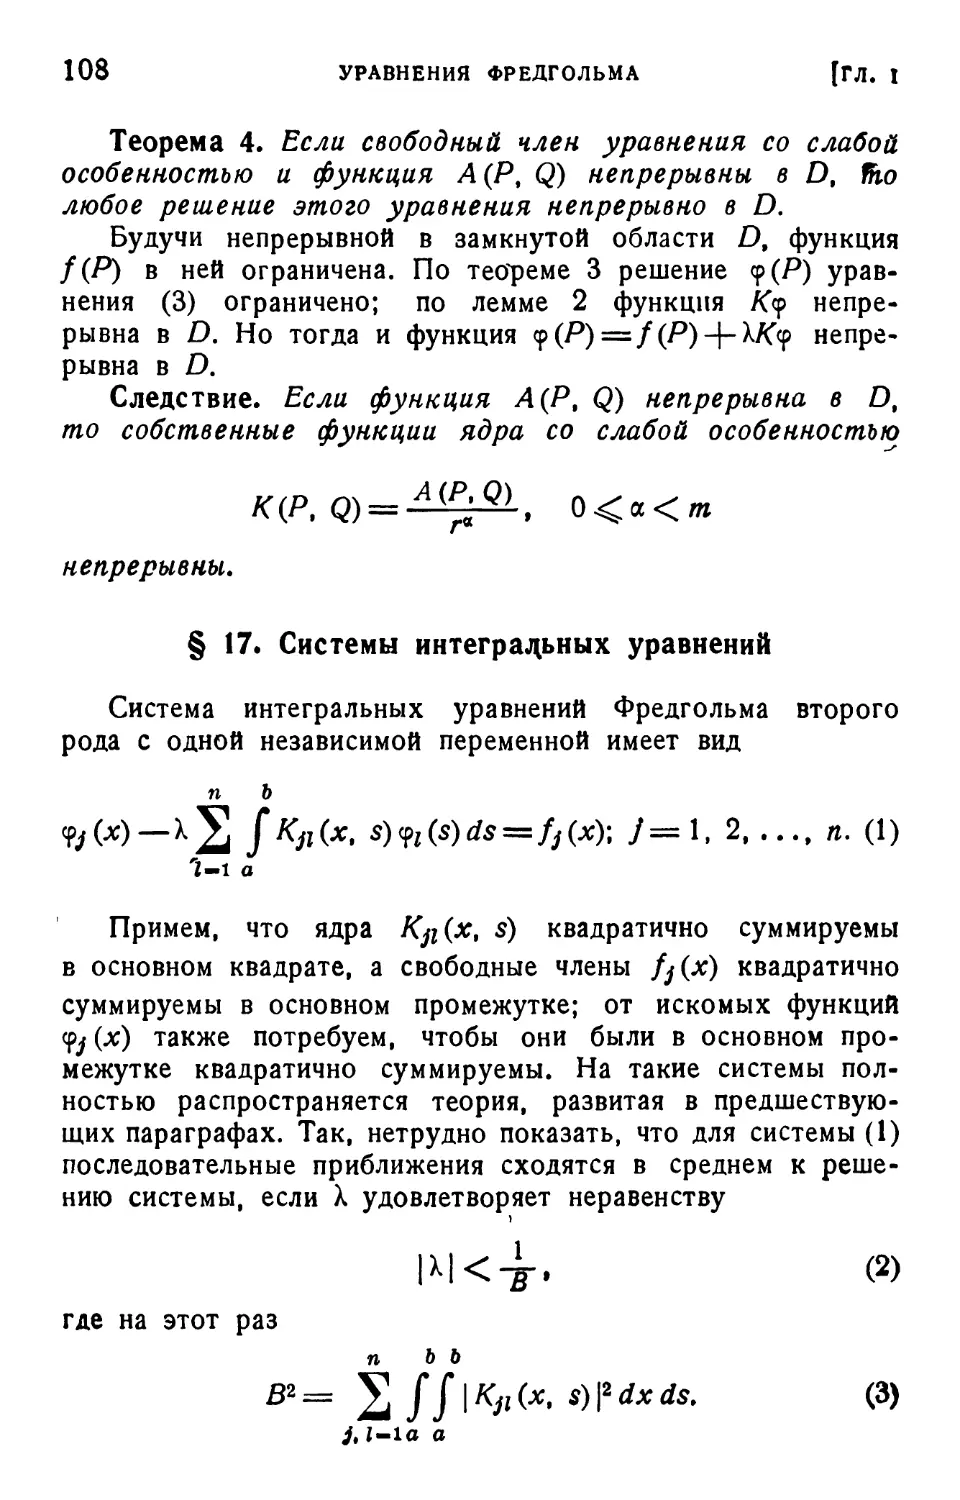 § 17. Системы интегральных уравнений